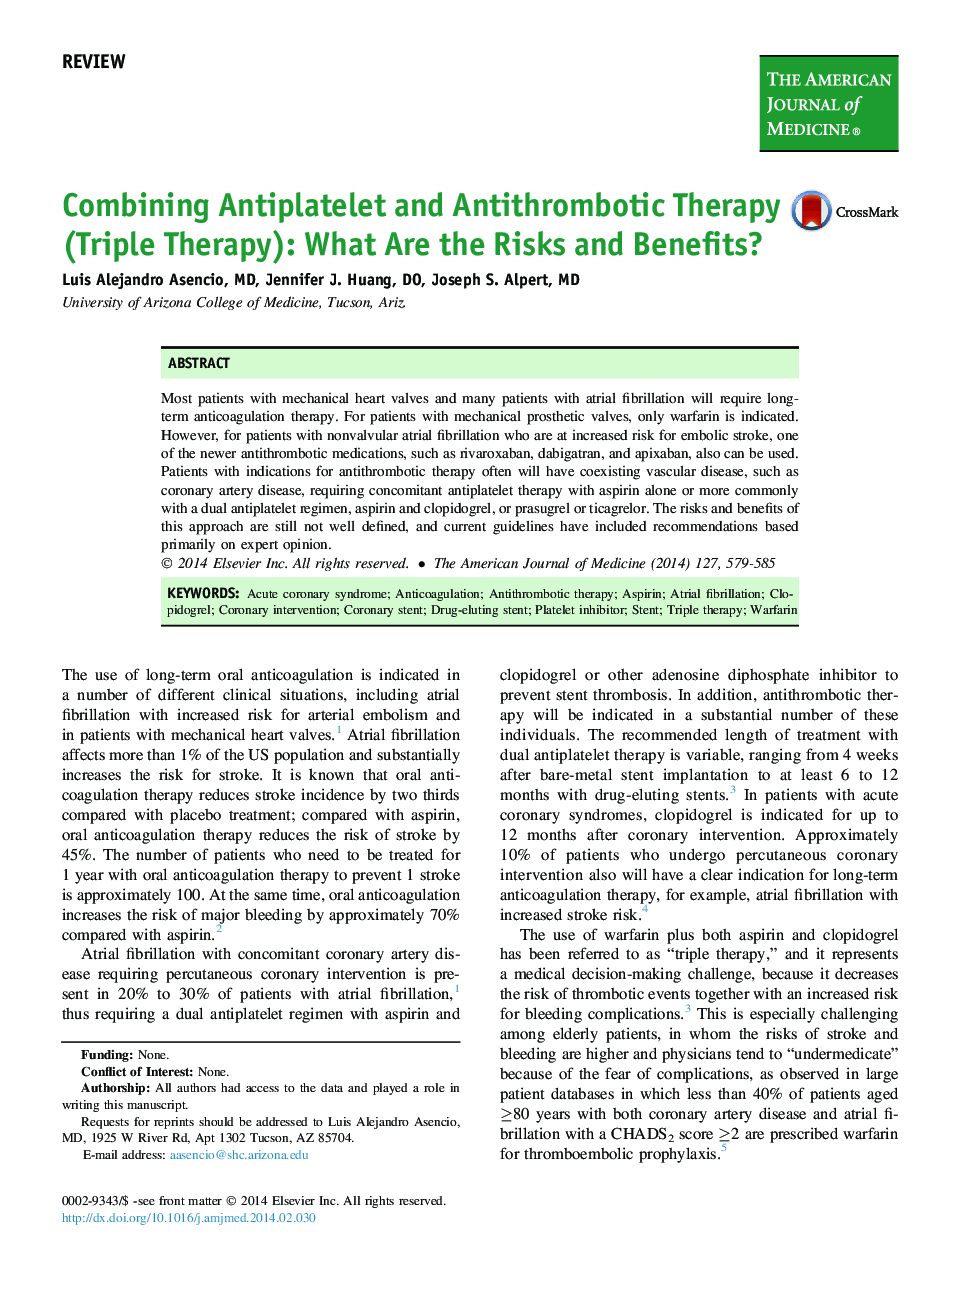 ترکیب آنتی بادی و آنتی ترومبوتیک (درمان سه گانه): ریسک ها و مزایای چیست؟ 